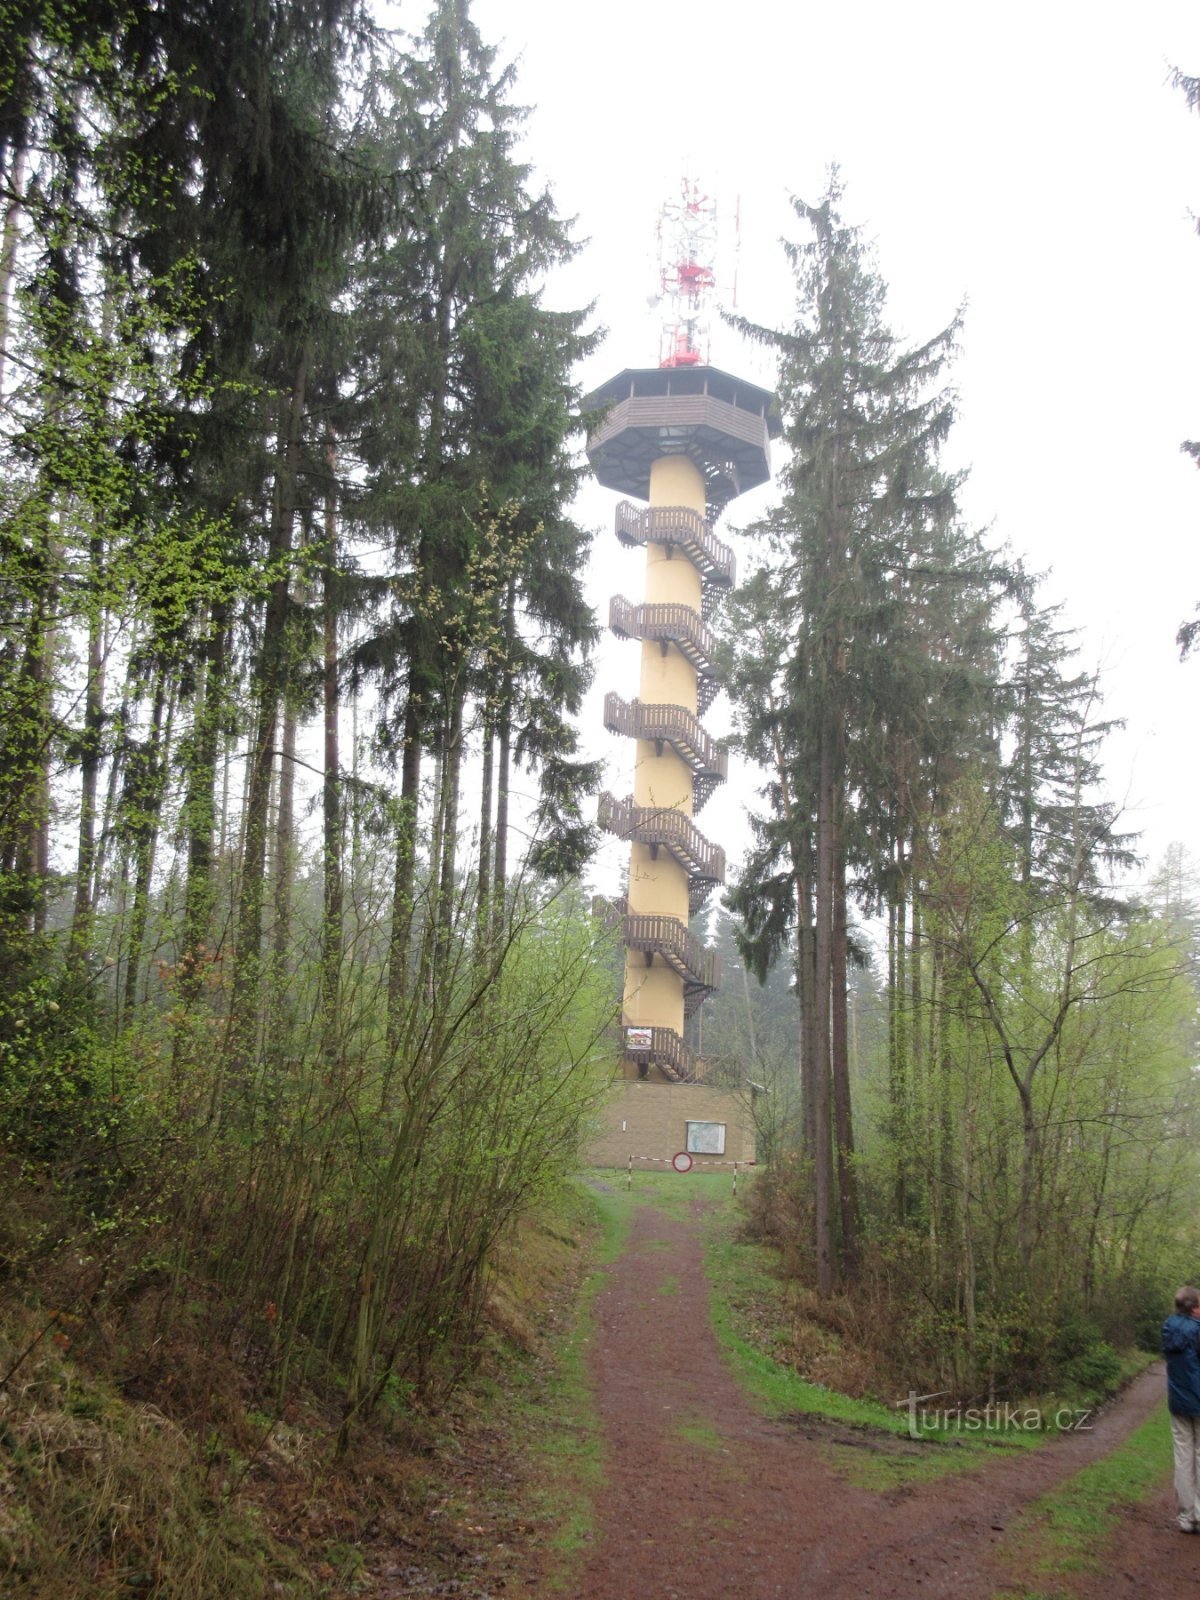 Turnul de observație Drahousek